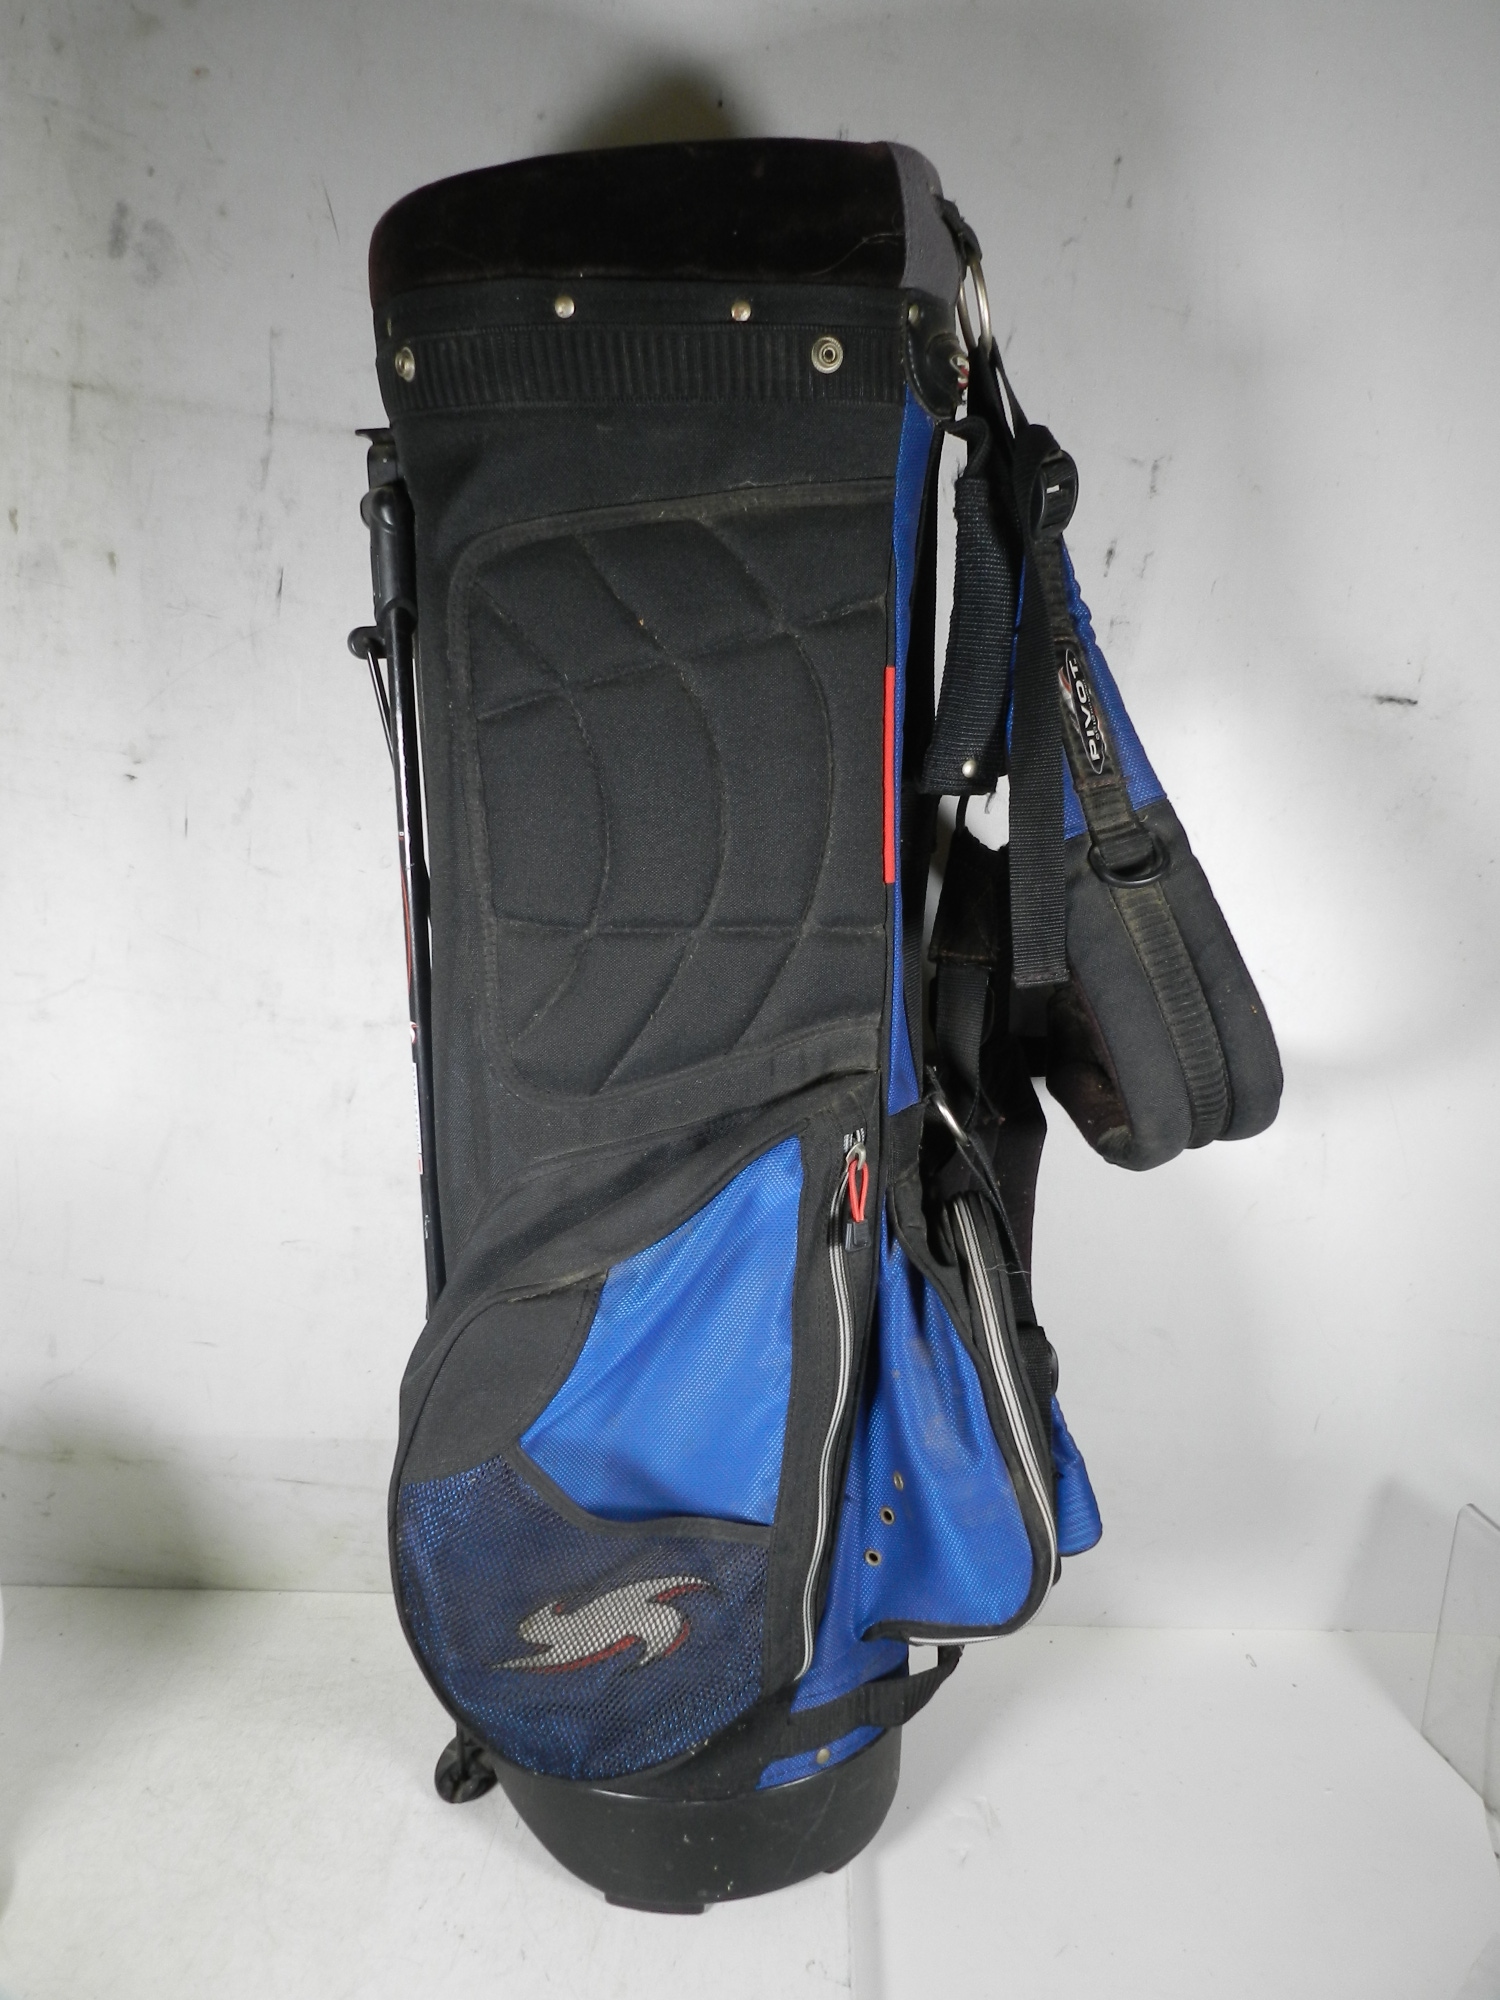 Ogio PIVOT Men's Lightweight Carry Blue & Black Golf Bag, 5 Way Divider System